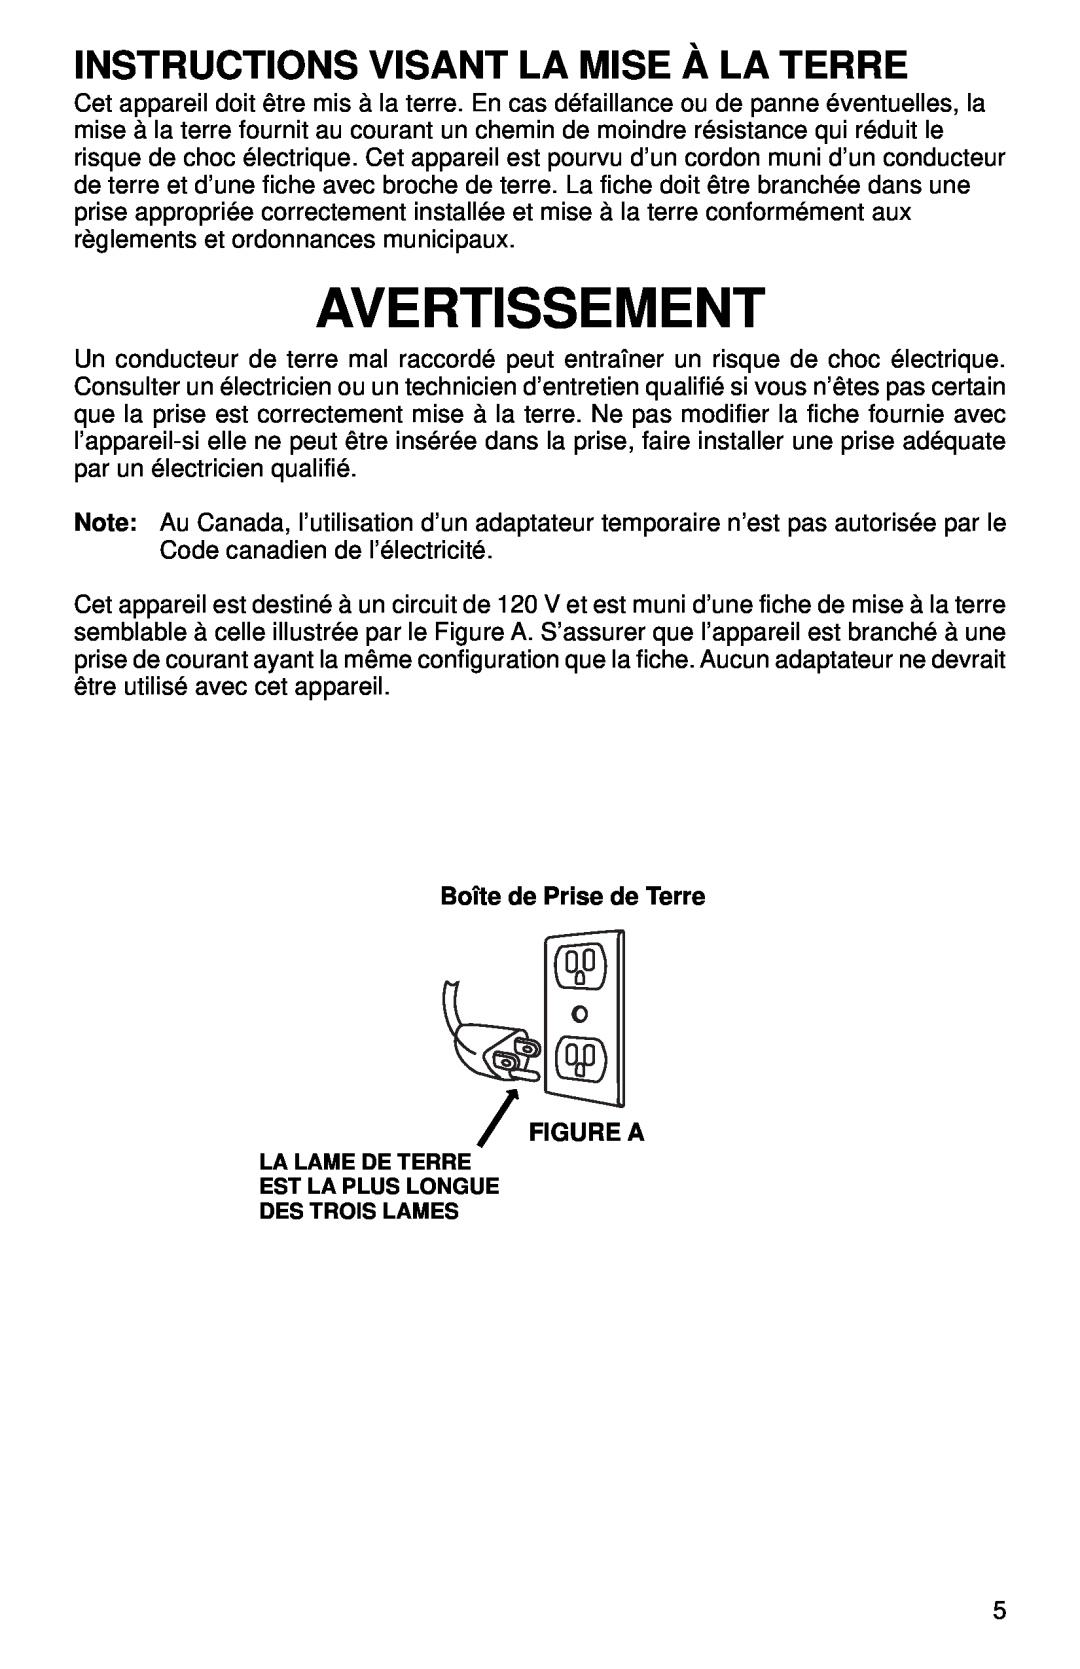 Sanitaire SC785 SERIES warranty Avertissement, Instructions Visant La Mise À La Terre 